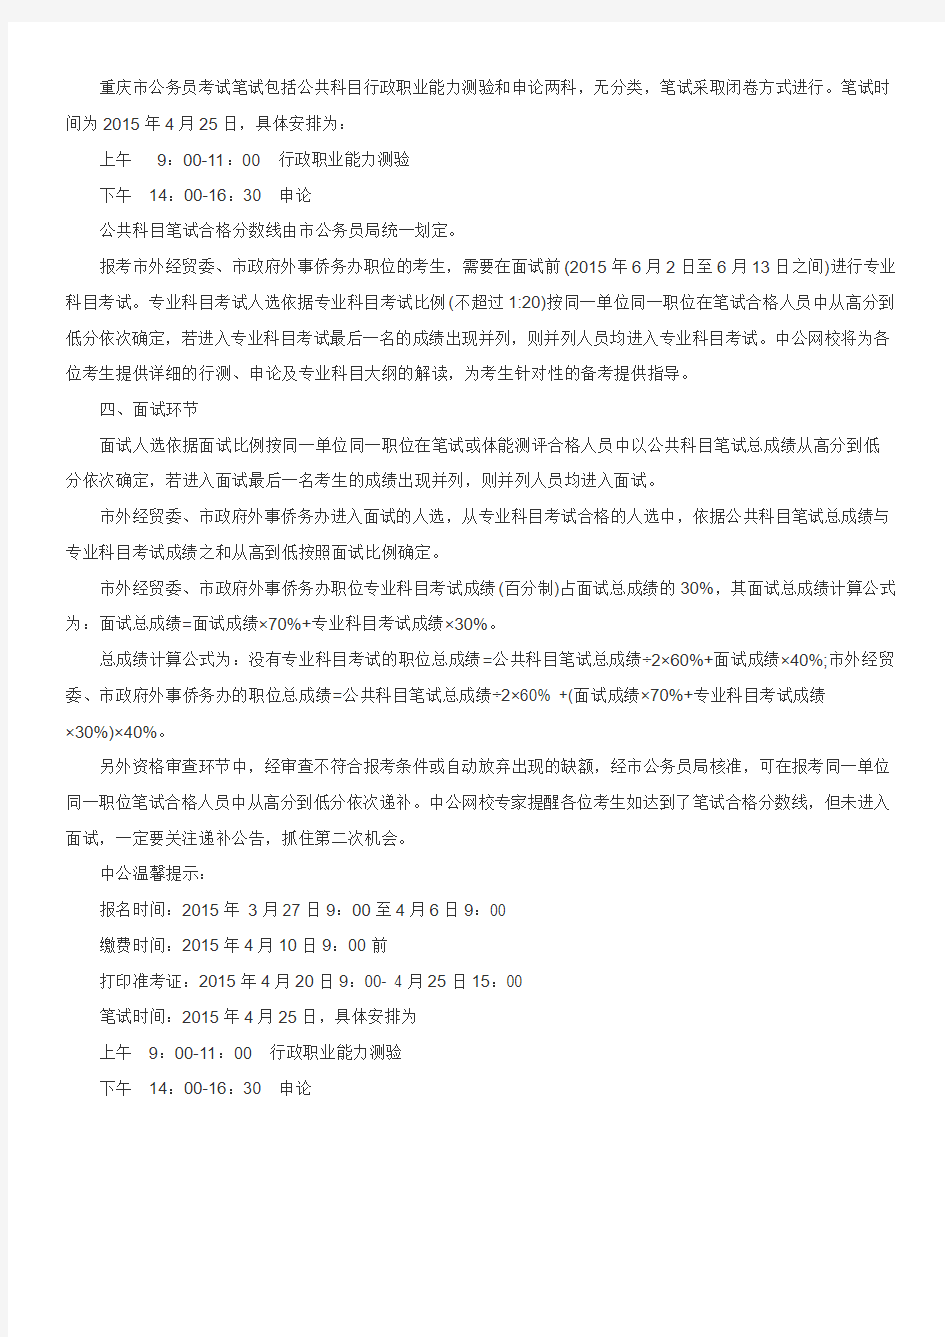 2015上半年重庆公务员考试公告